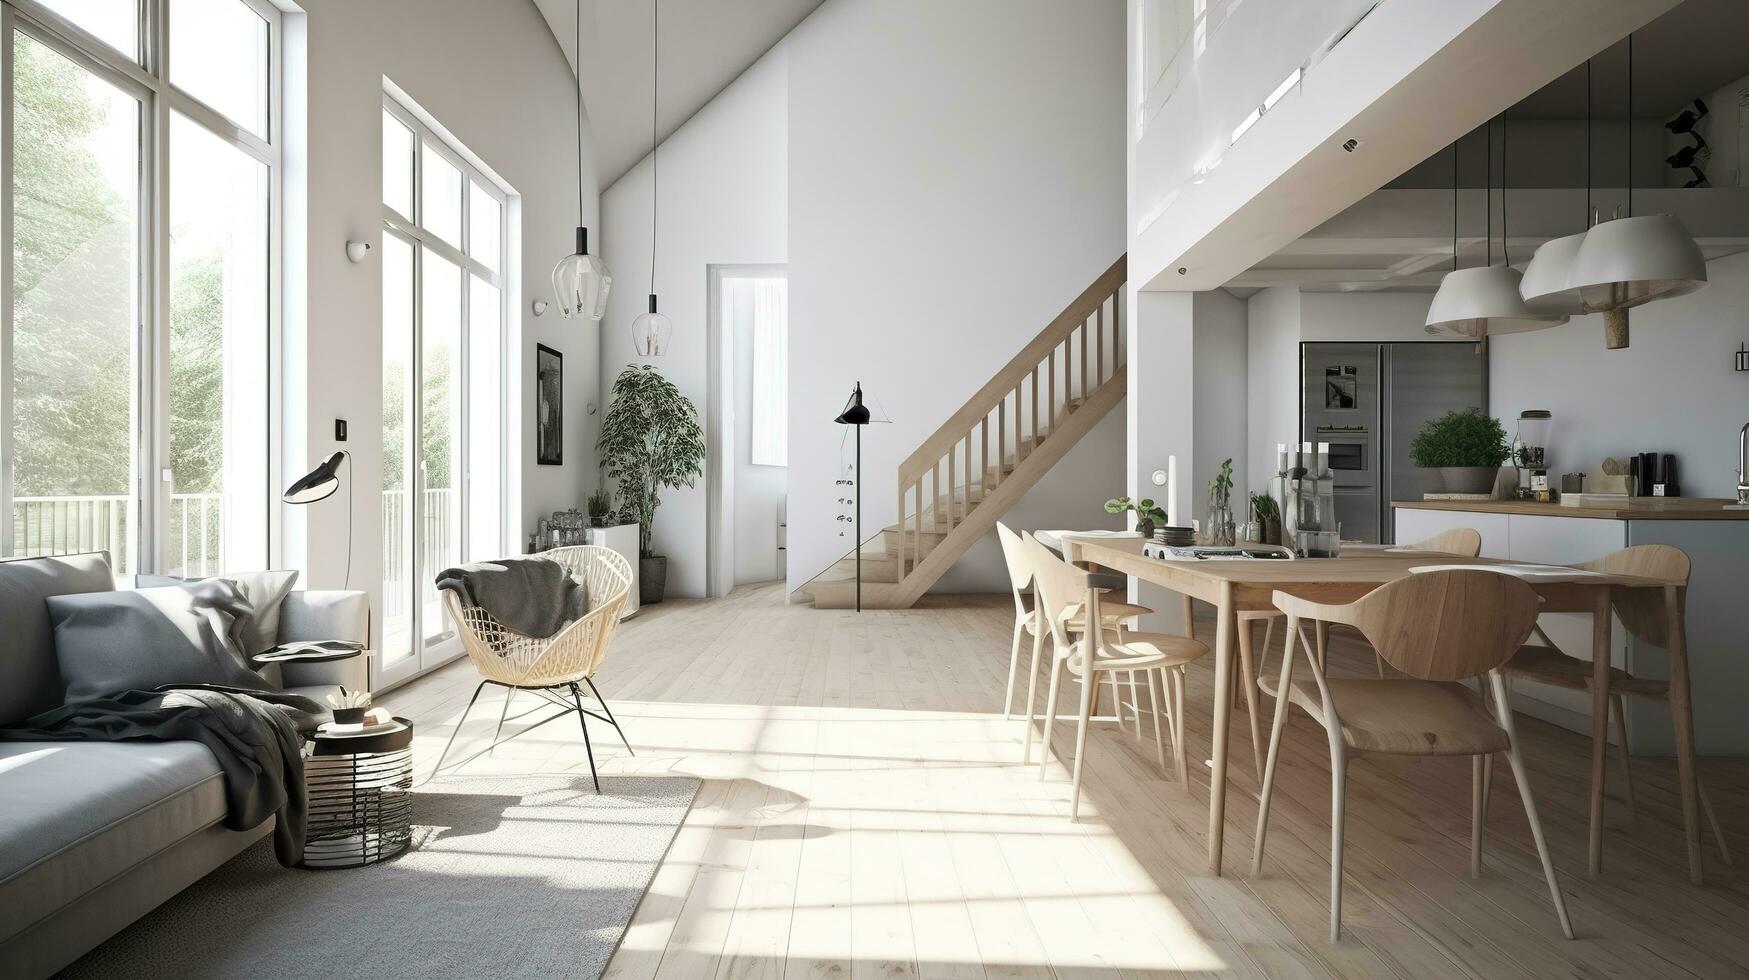 Innere Design, ein Perspektive von ein Leben Zimmer und ein Küche mit ein Insel, groß Fenster mit natürlich Licht, modern Möbel, Dachfenster, modern minimalistisch Design, generieren ai foto